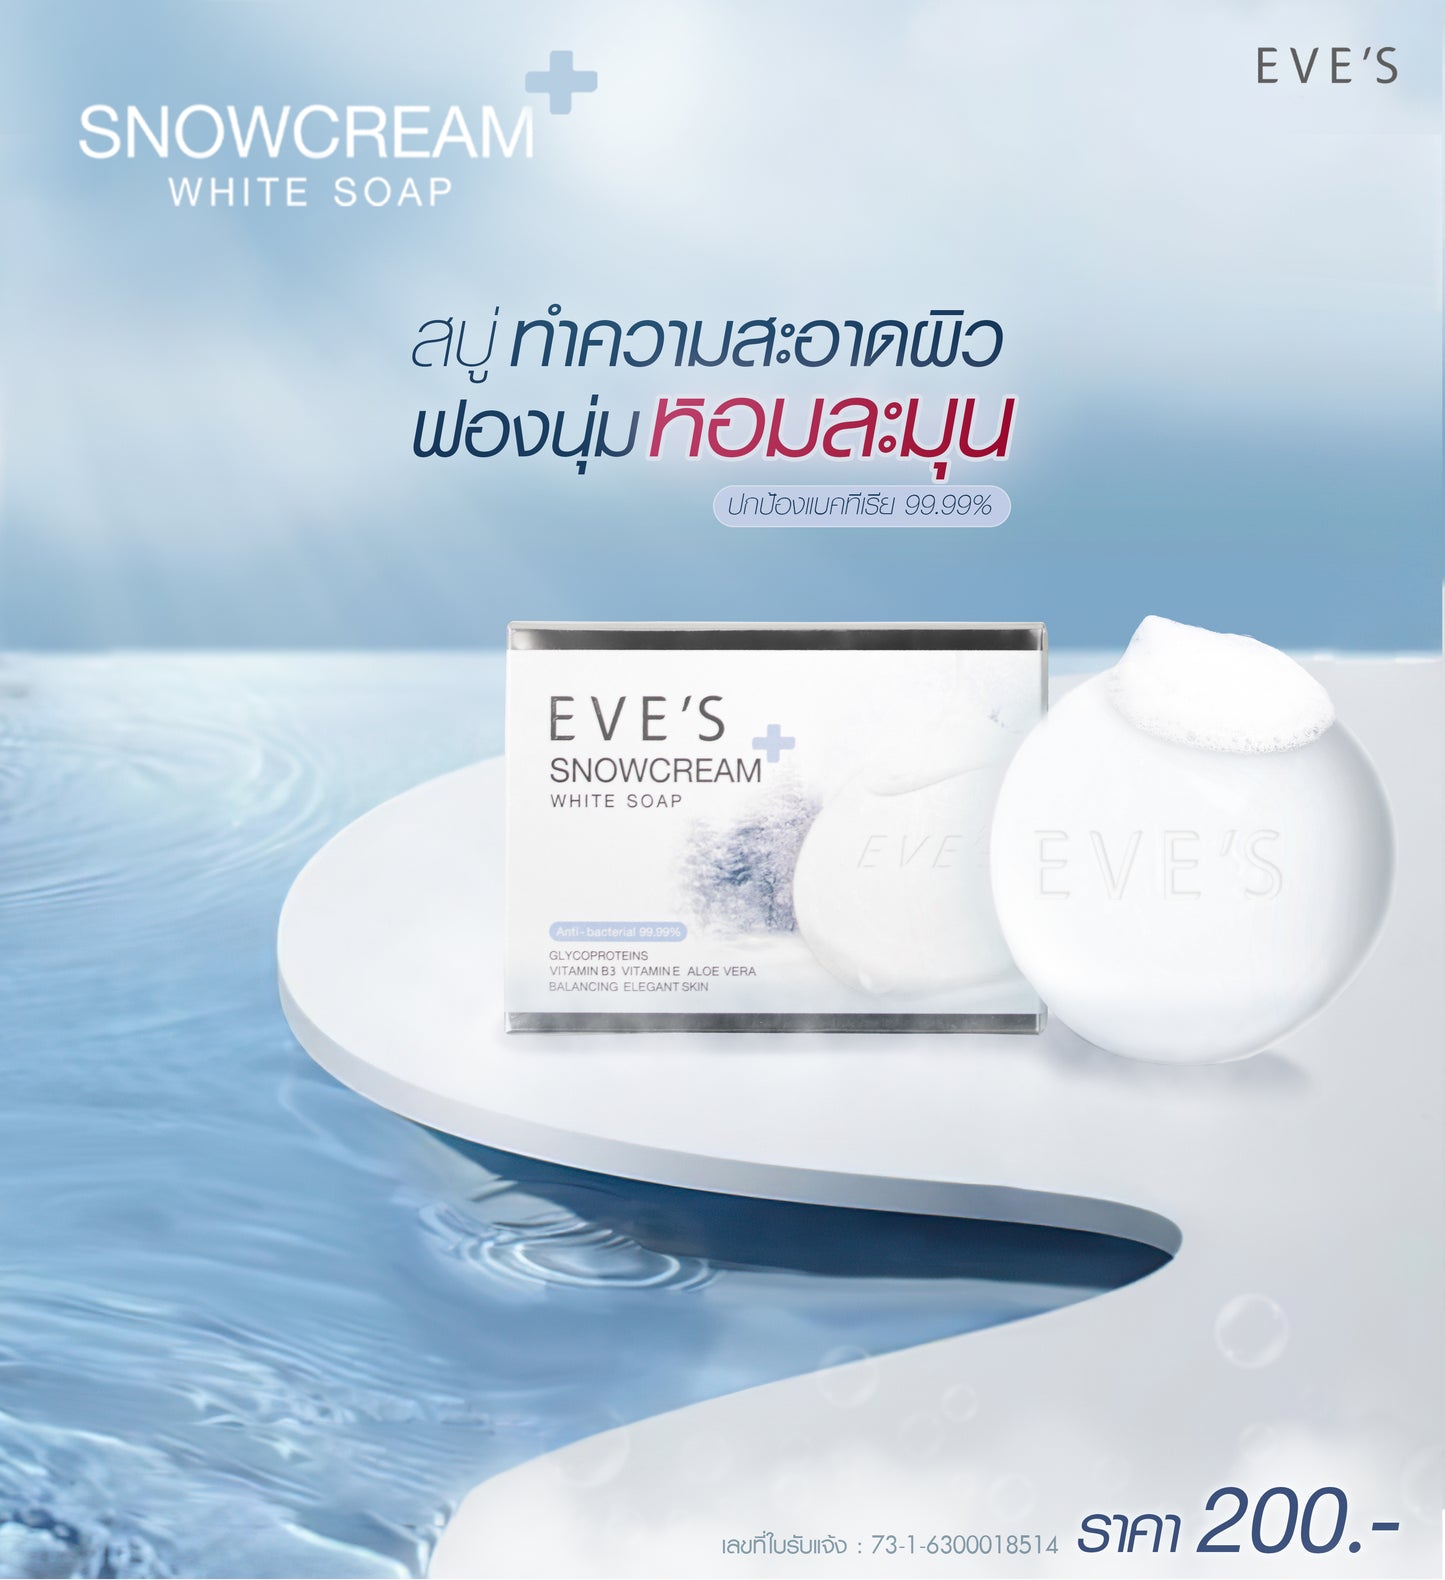 EVE'S SNOWCREAM WHITE SOAP 130 g.